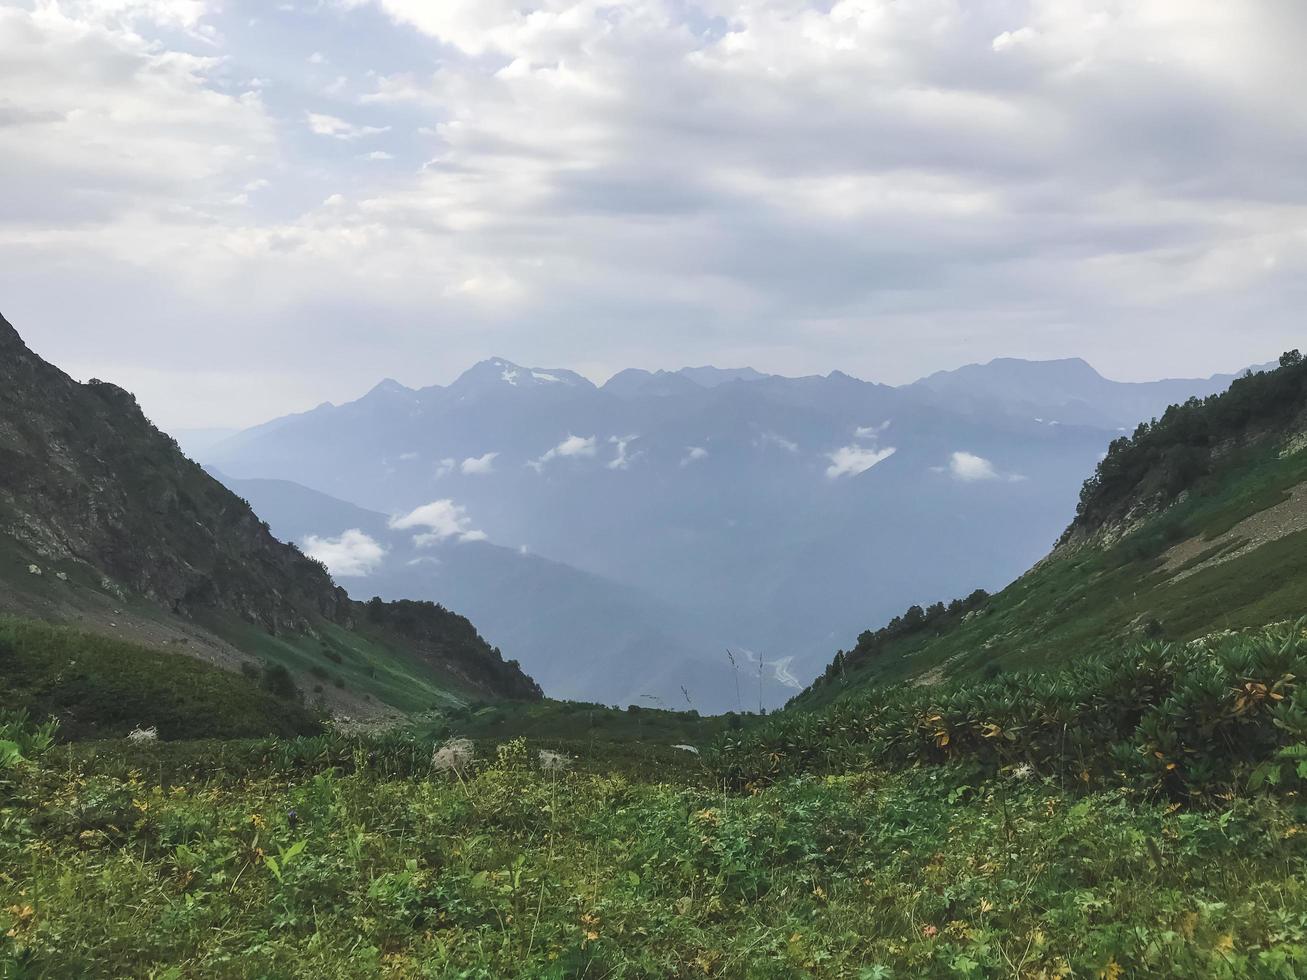 prachtig uitzicht in de bergen van de Kaukasus. roza khutor, rusland foto